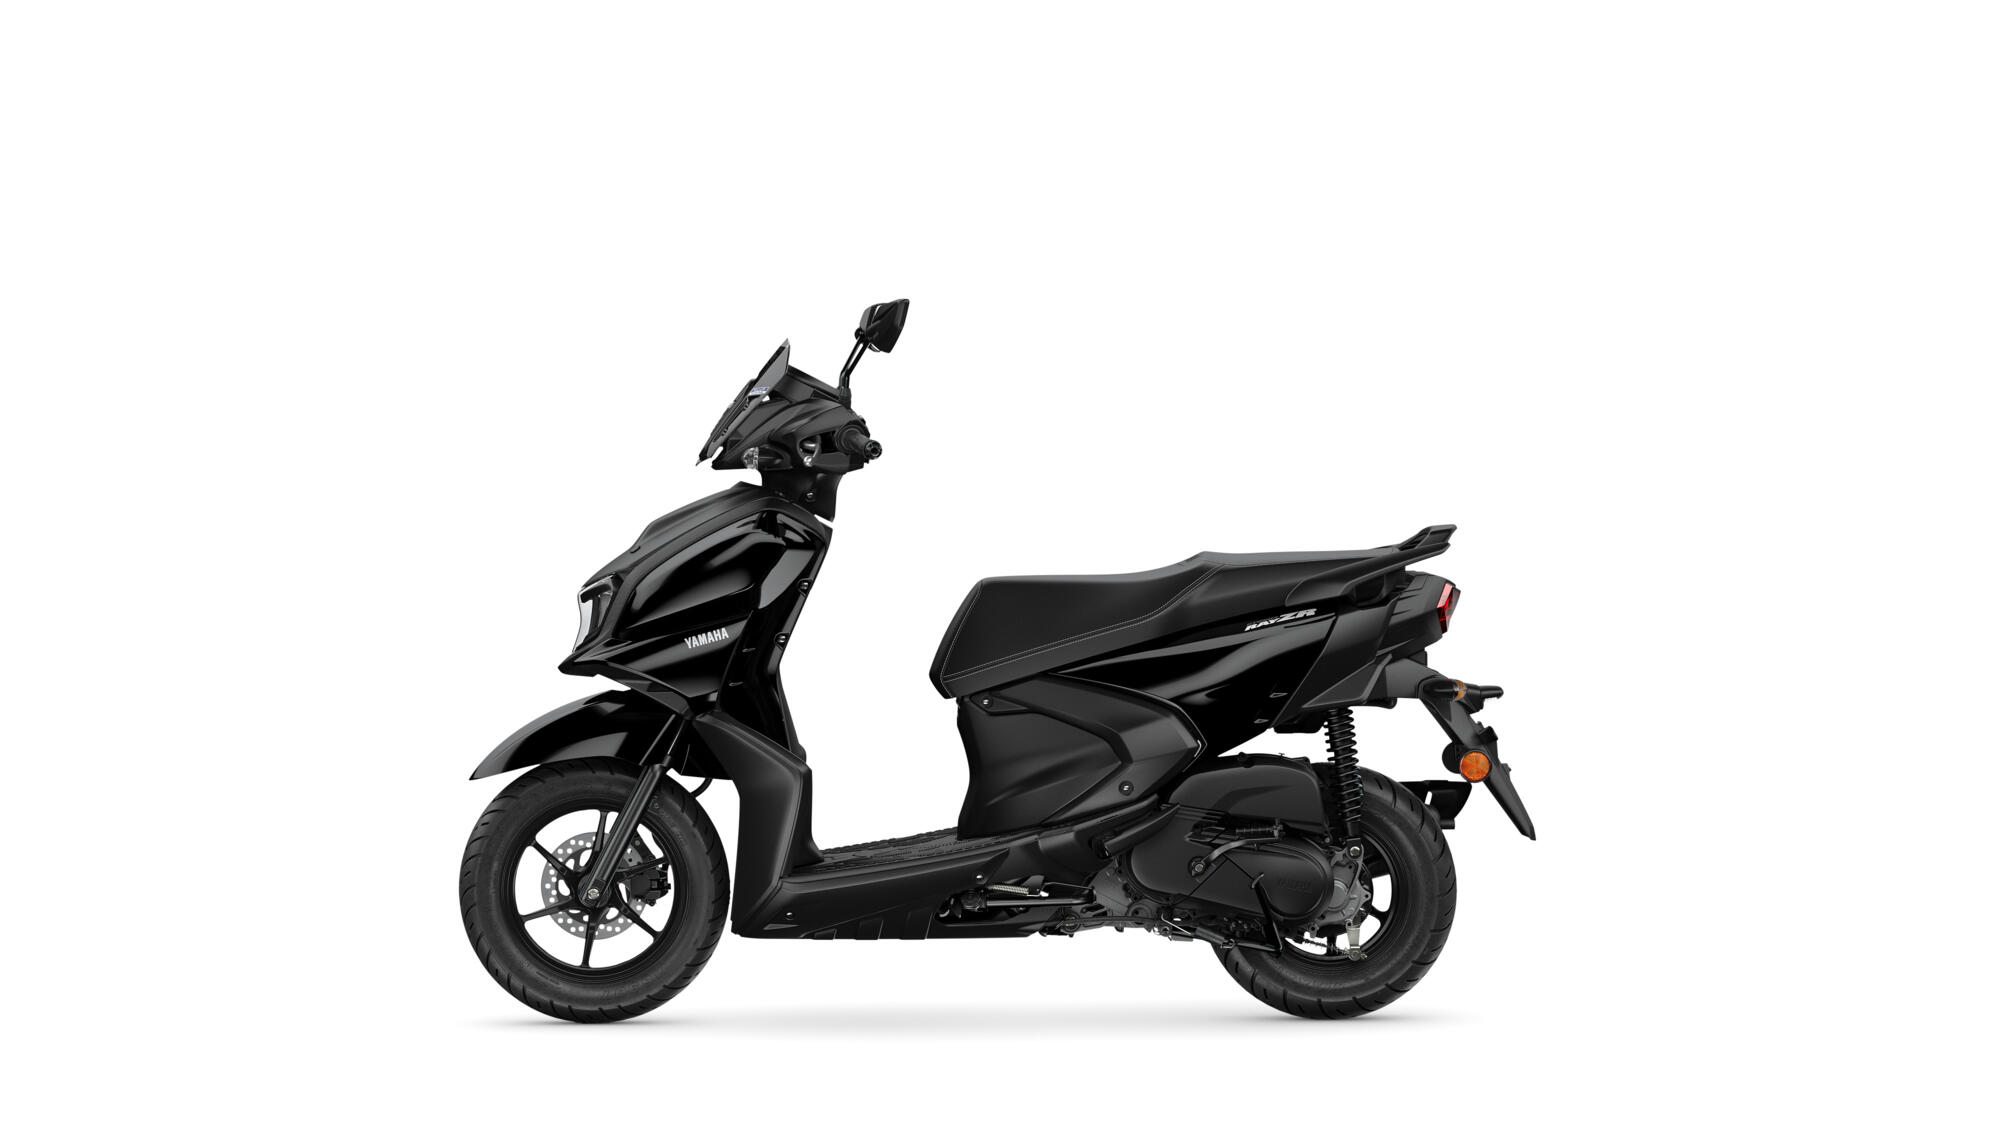 preco-scooter-da-yamaha-ray-zr Nova scooter da Yamaha promete o menor consumo da categoria